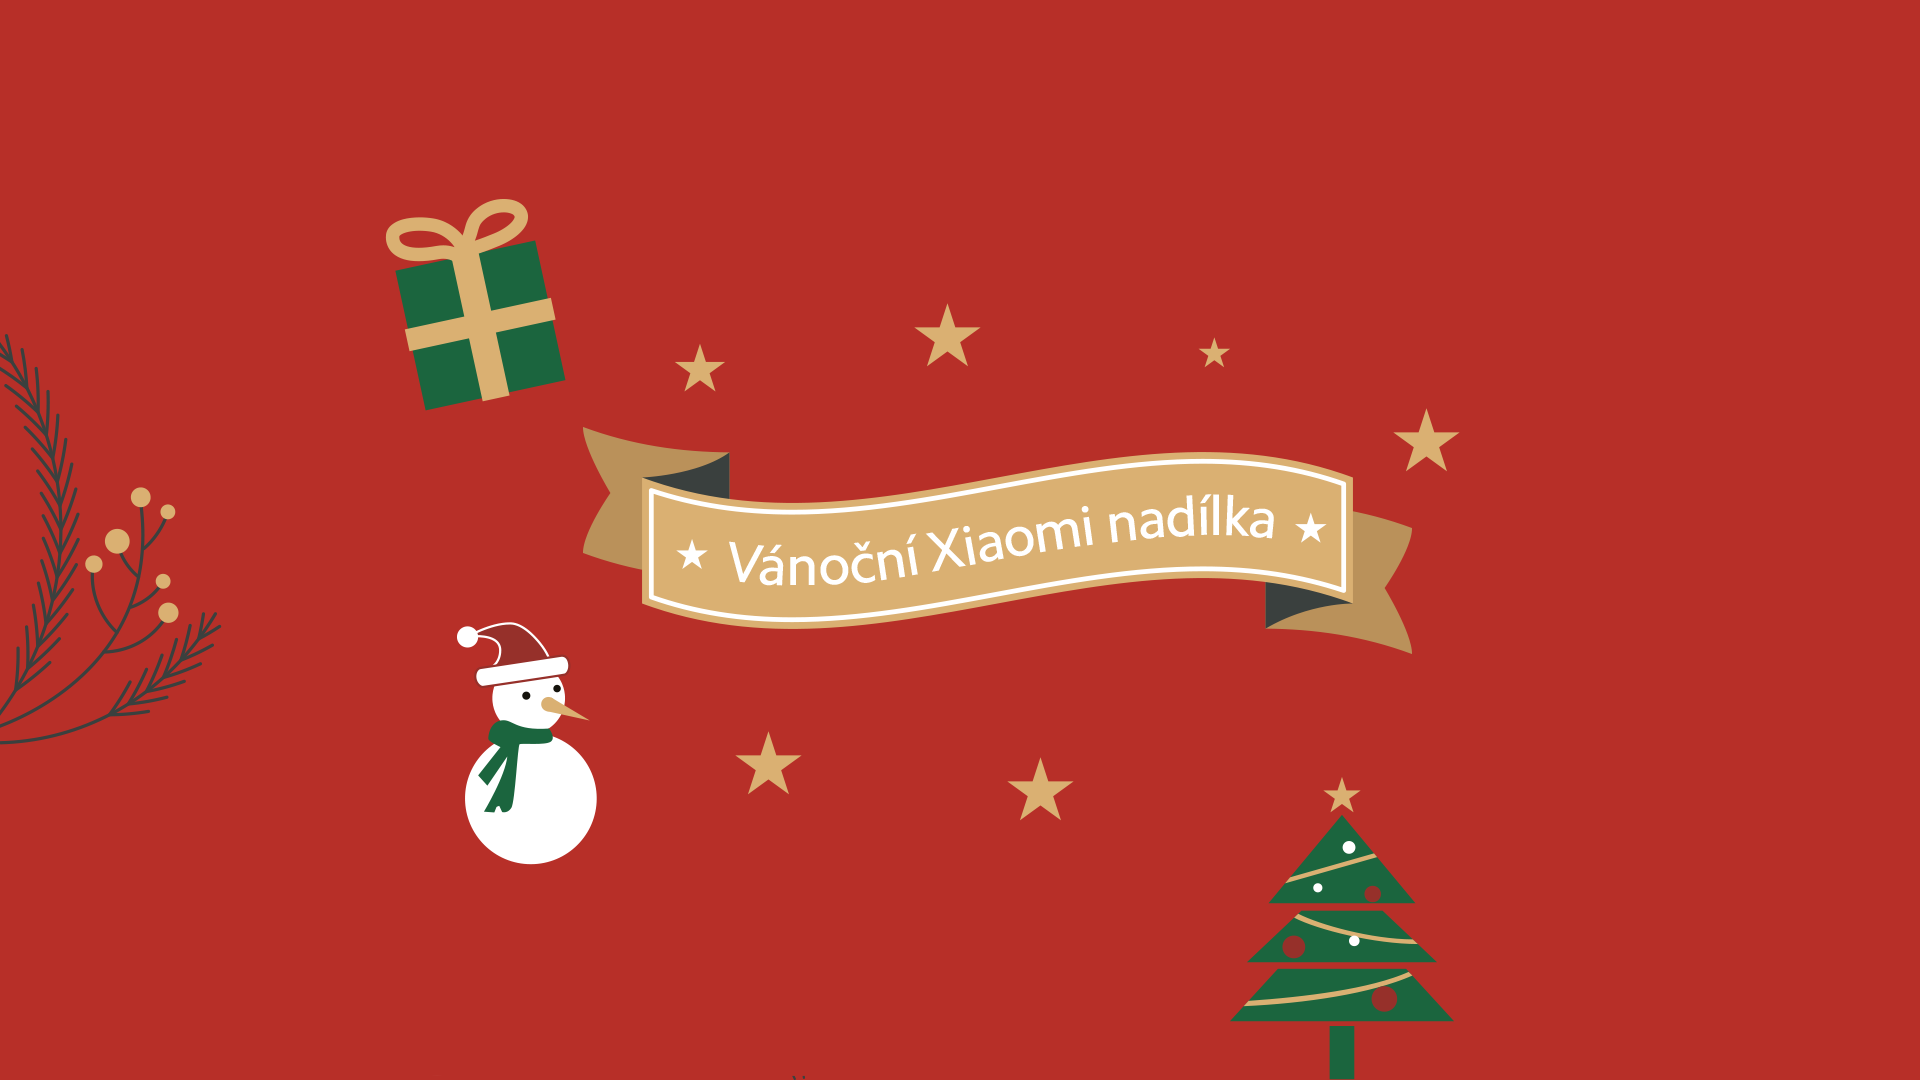 Vánoční Xiaomi nadílka